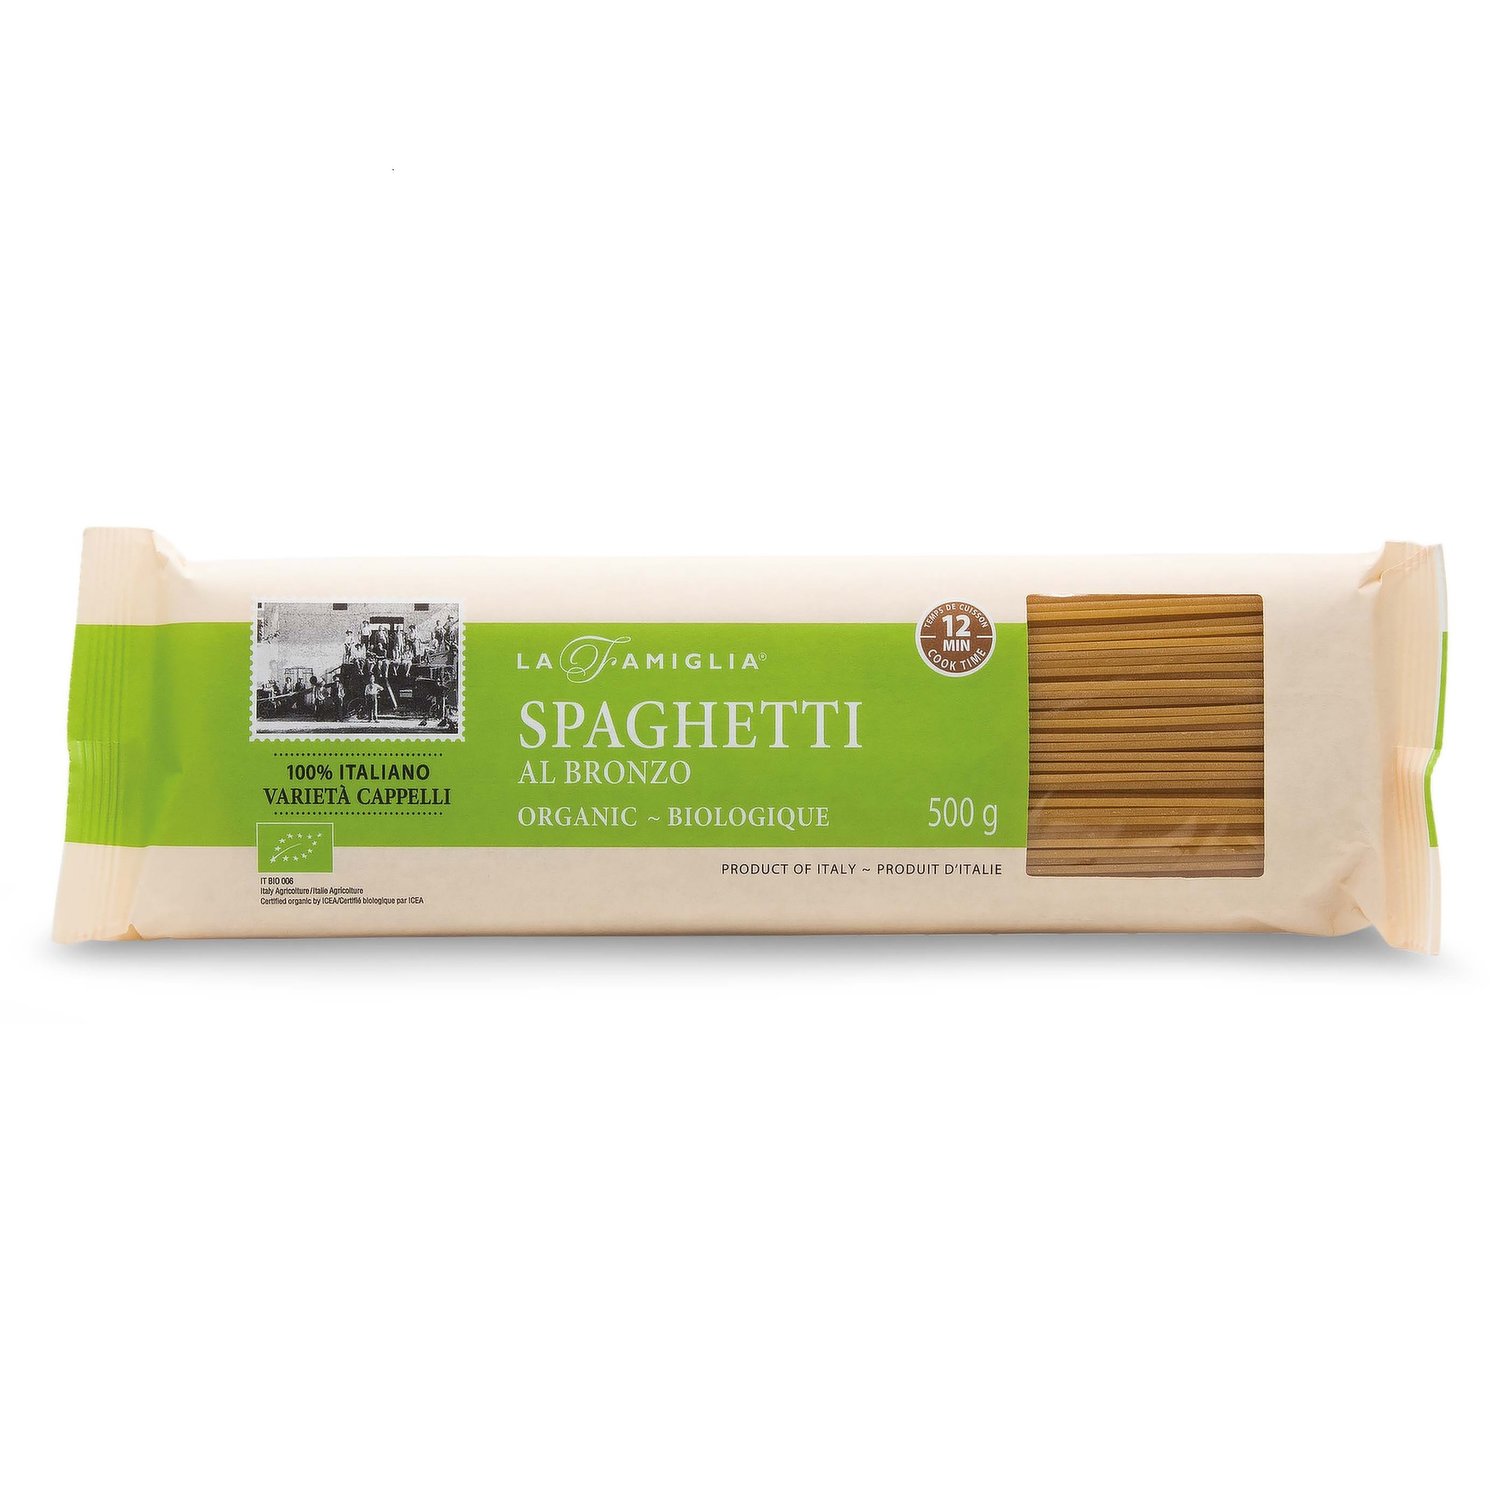 La Famiglia - Spaghetti Al Bronzo Organic